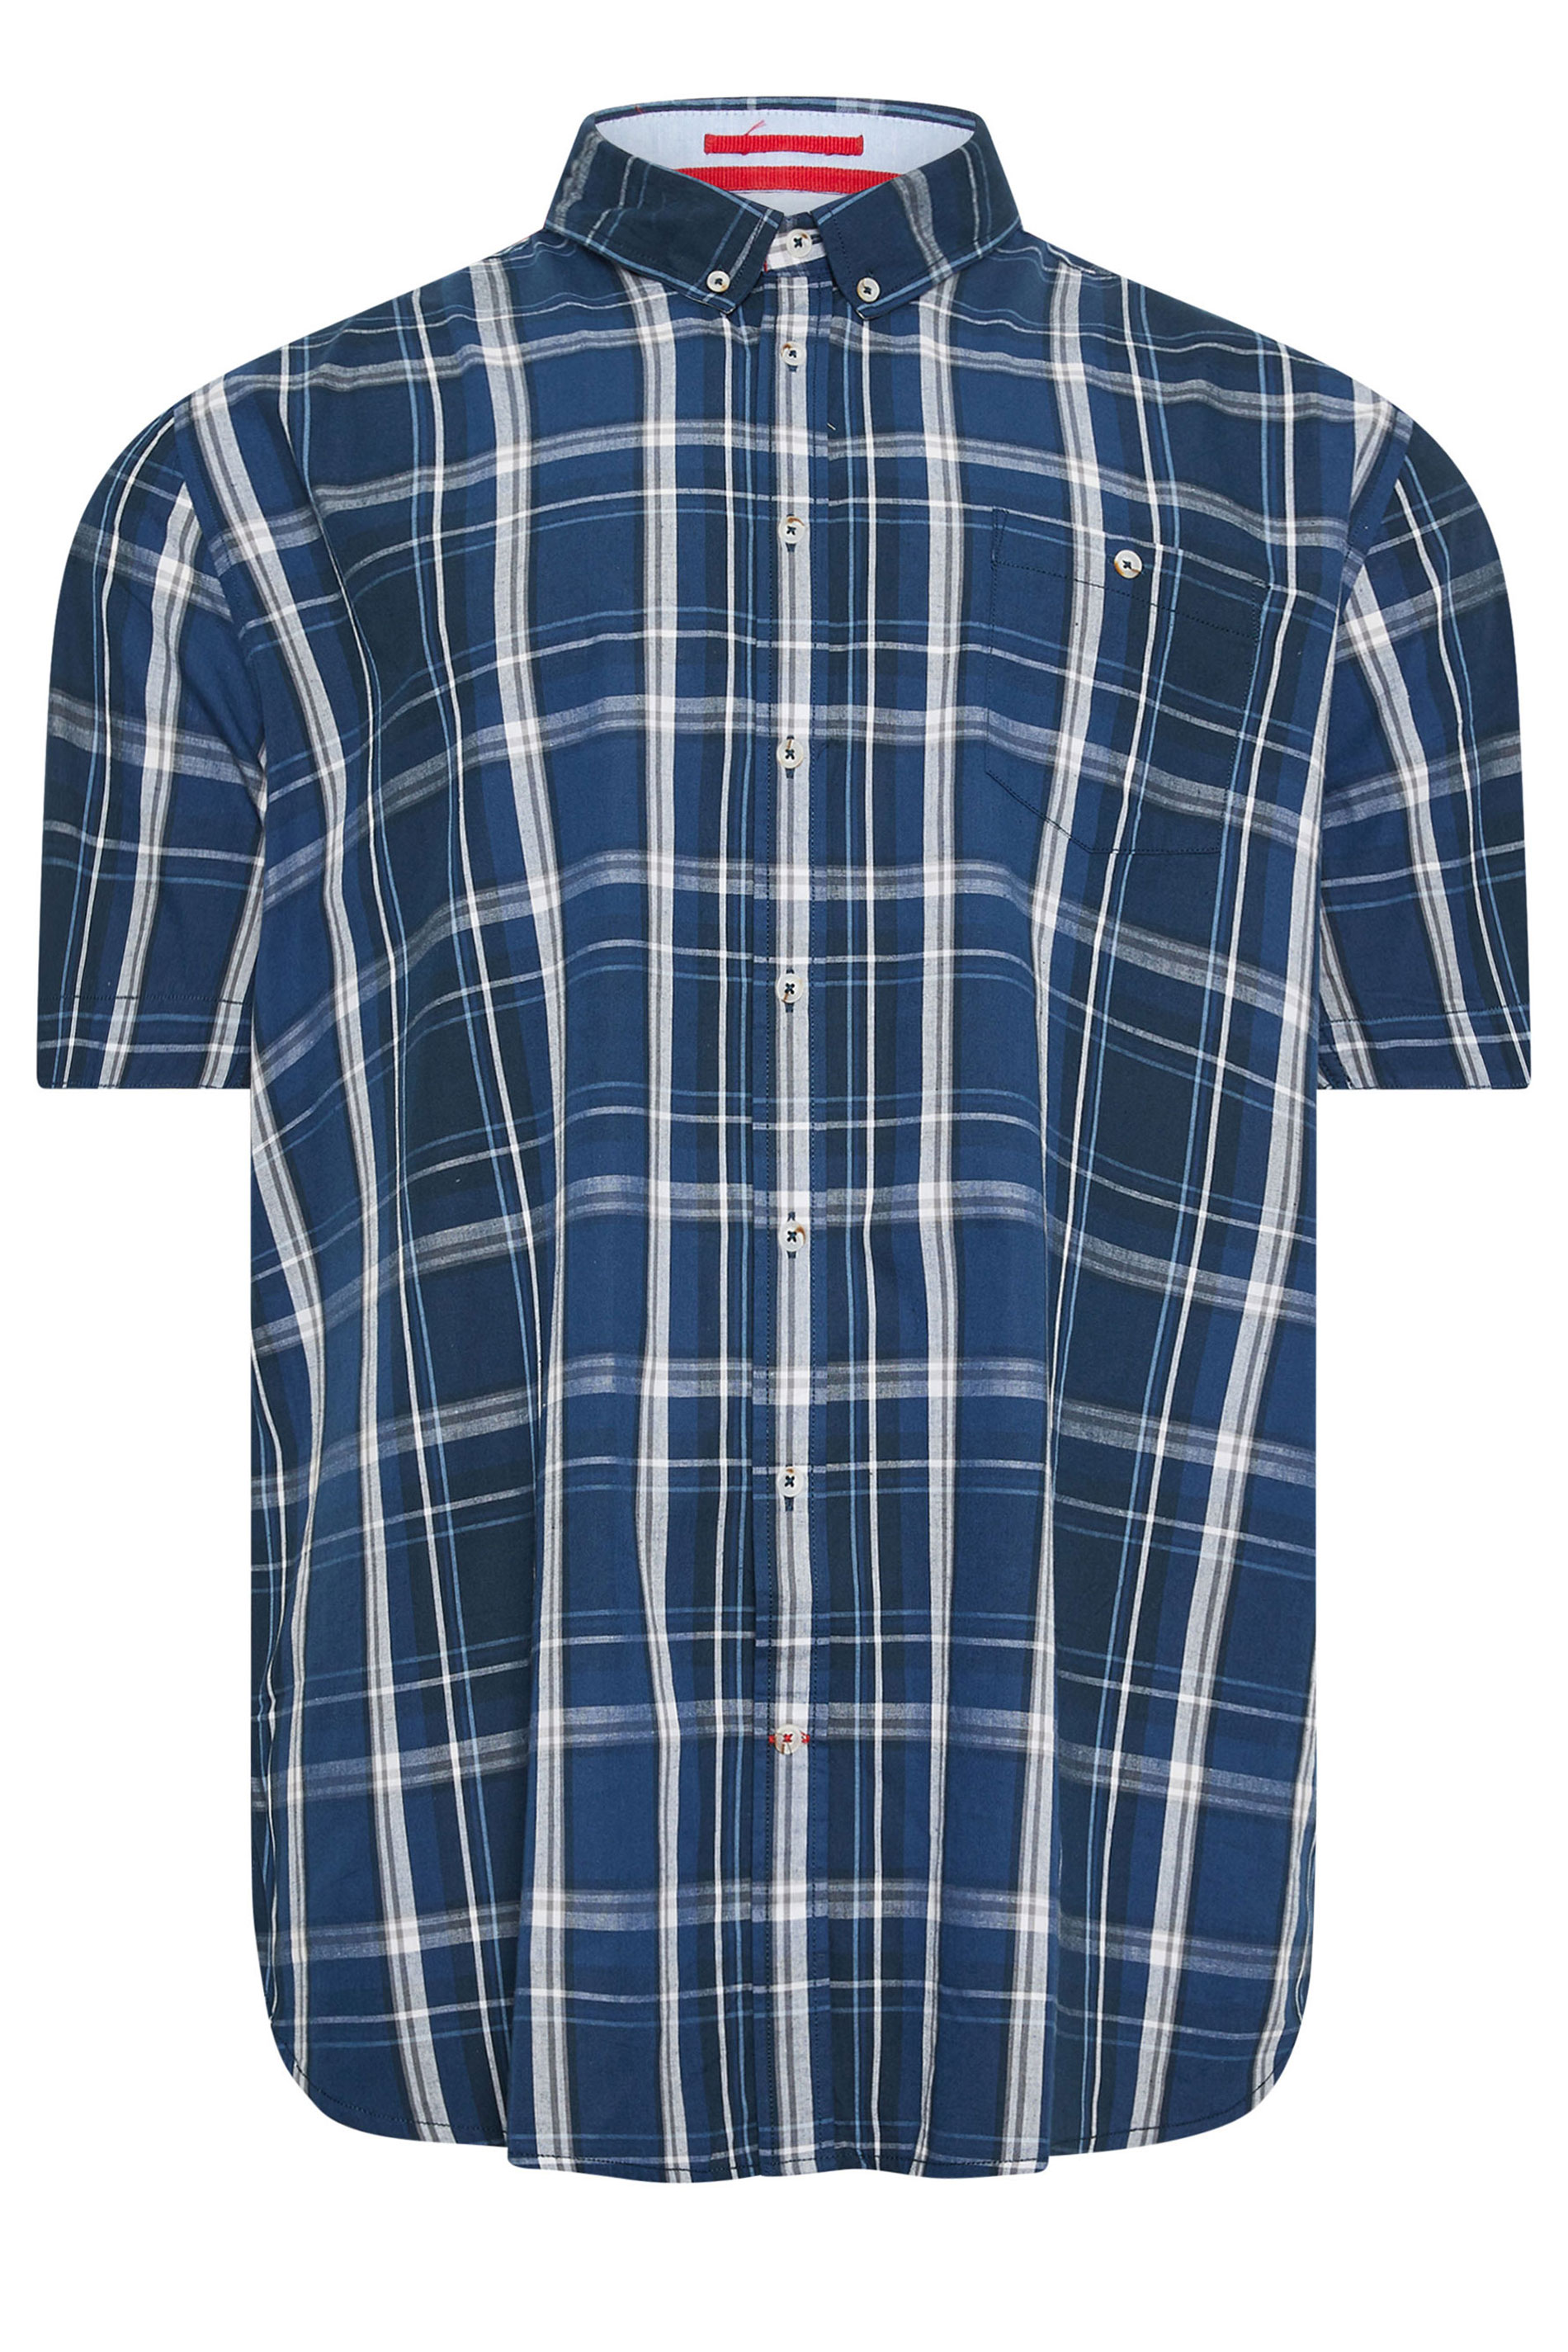 D555 Big & Tall Navy Blue Check Print Short Sleeve Shirt | BadRhino 3